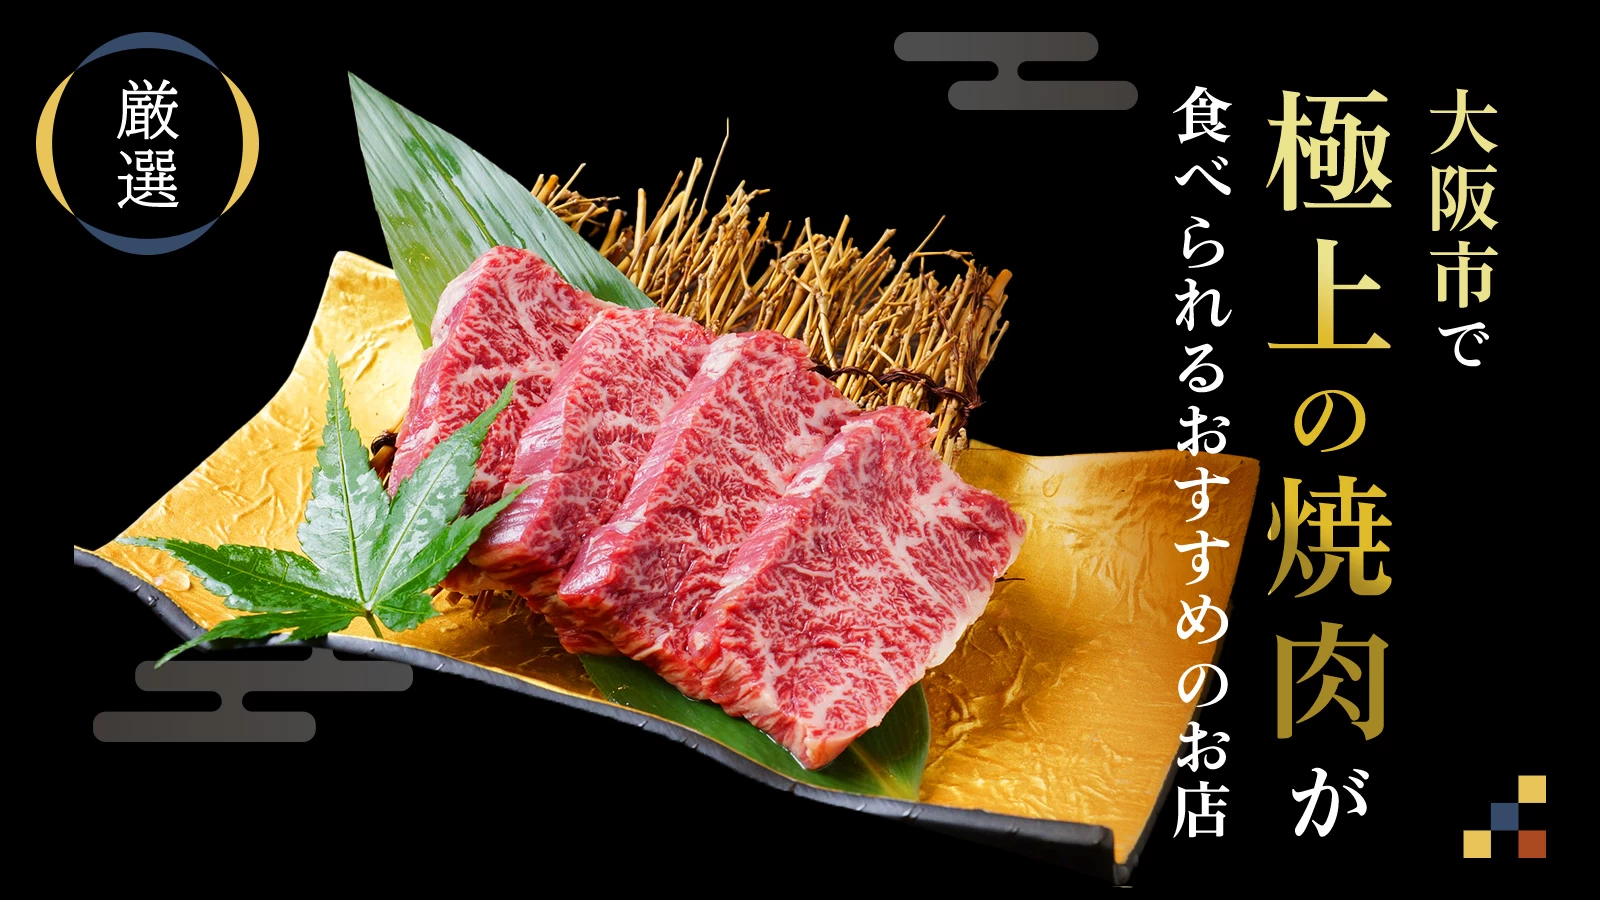 【厳選】大阪市で極上の焼き肉が食べられるおすすめのお店7選